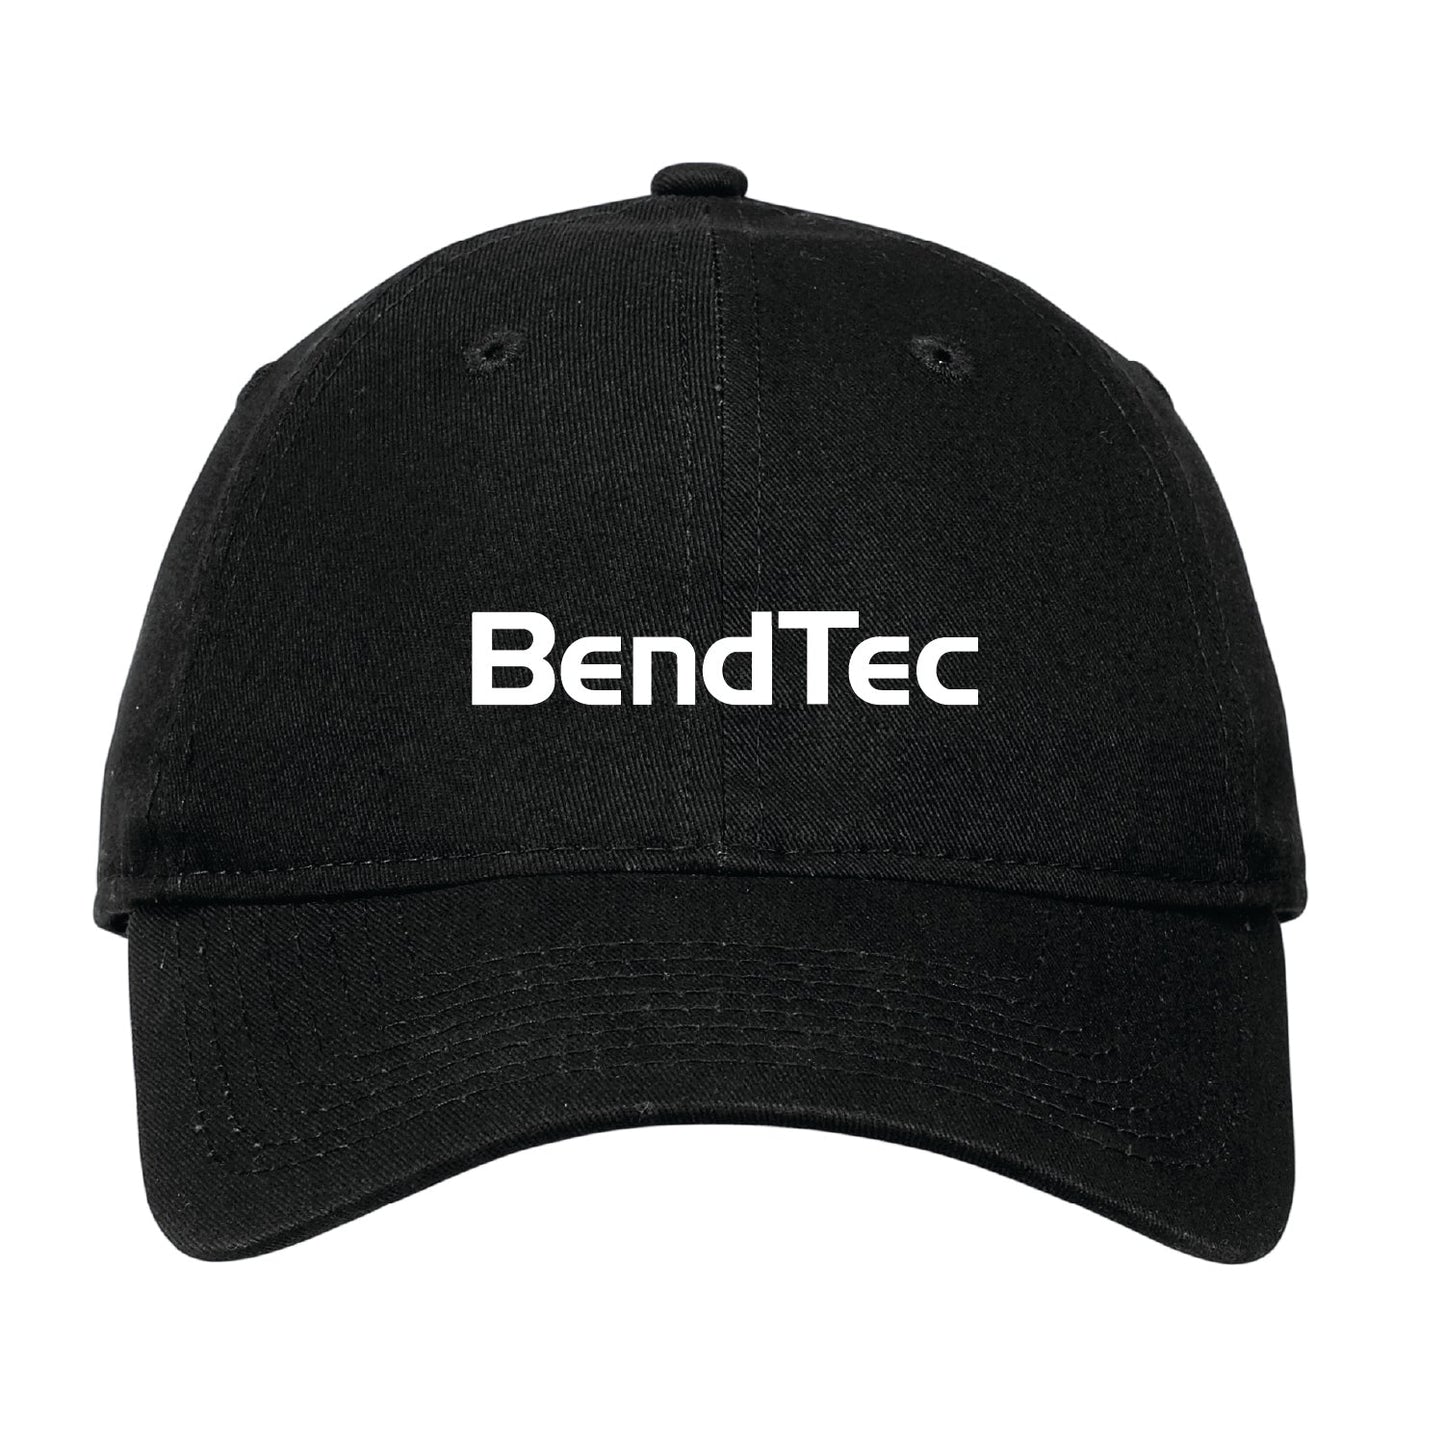 Bendtec Unstructured Adjustable Cap - DSP On Demand